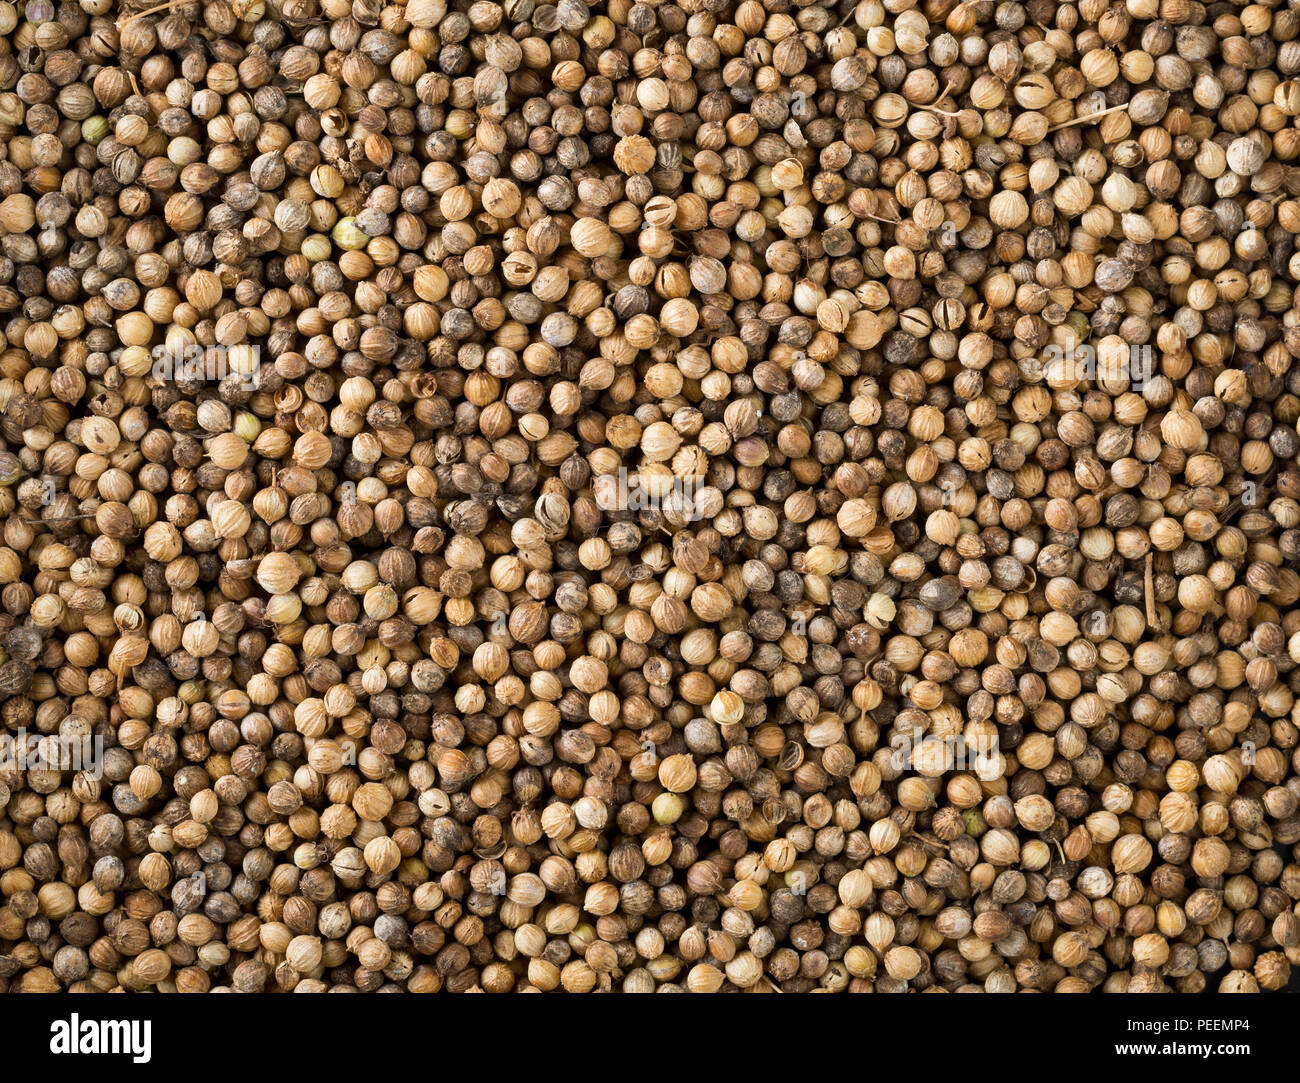 Frame Füllung Hintergrund der Rohe, unbearbeitete Bio Koriander oder koriander Samen Stockfoto